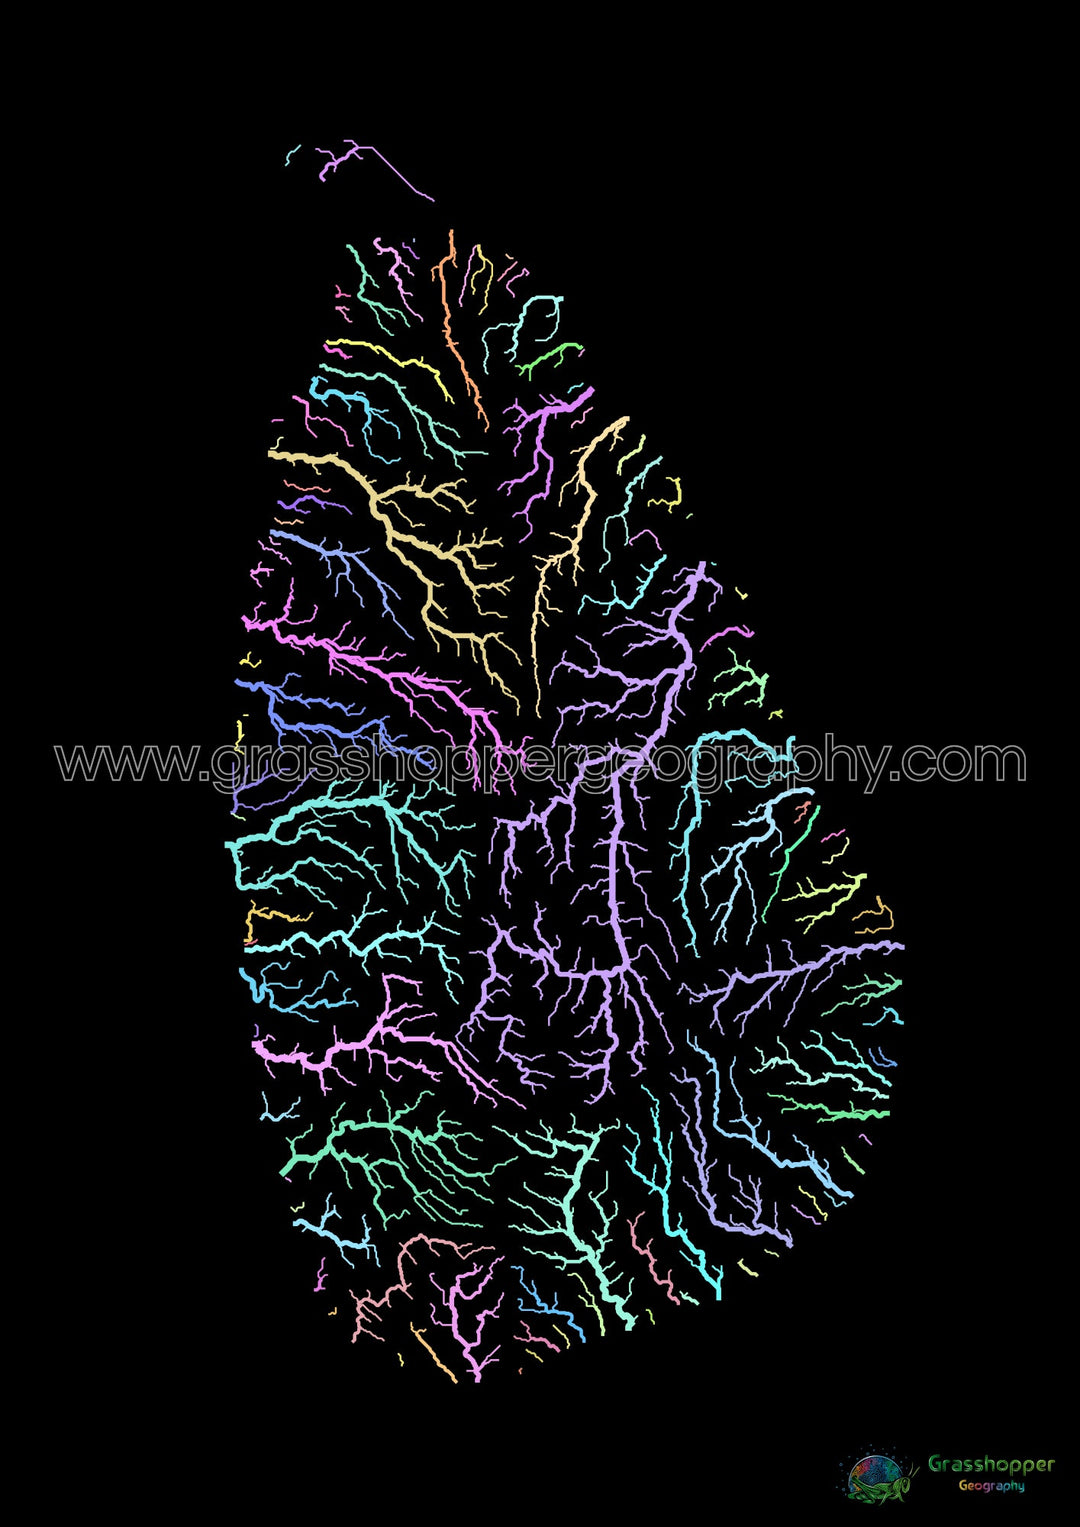 Sri Lanka - Carte des bassins fluviaux, pastel sur noir - Fine Art Print